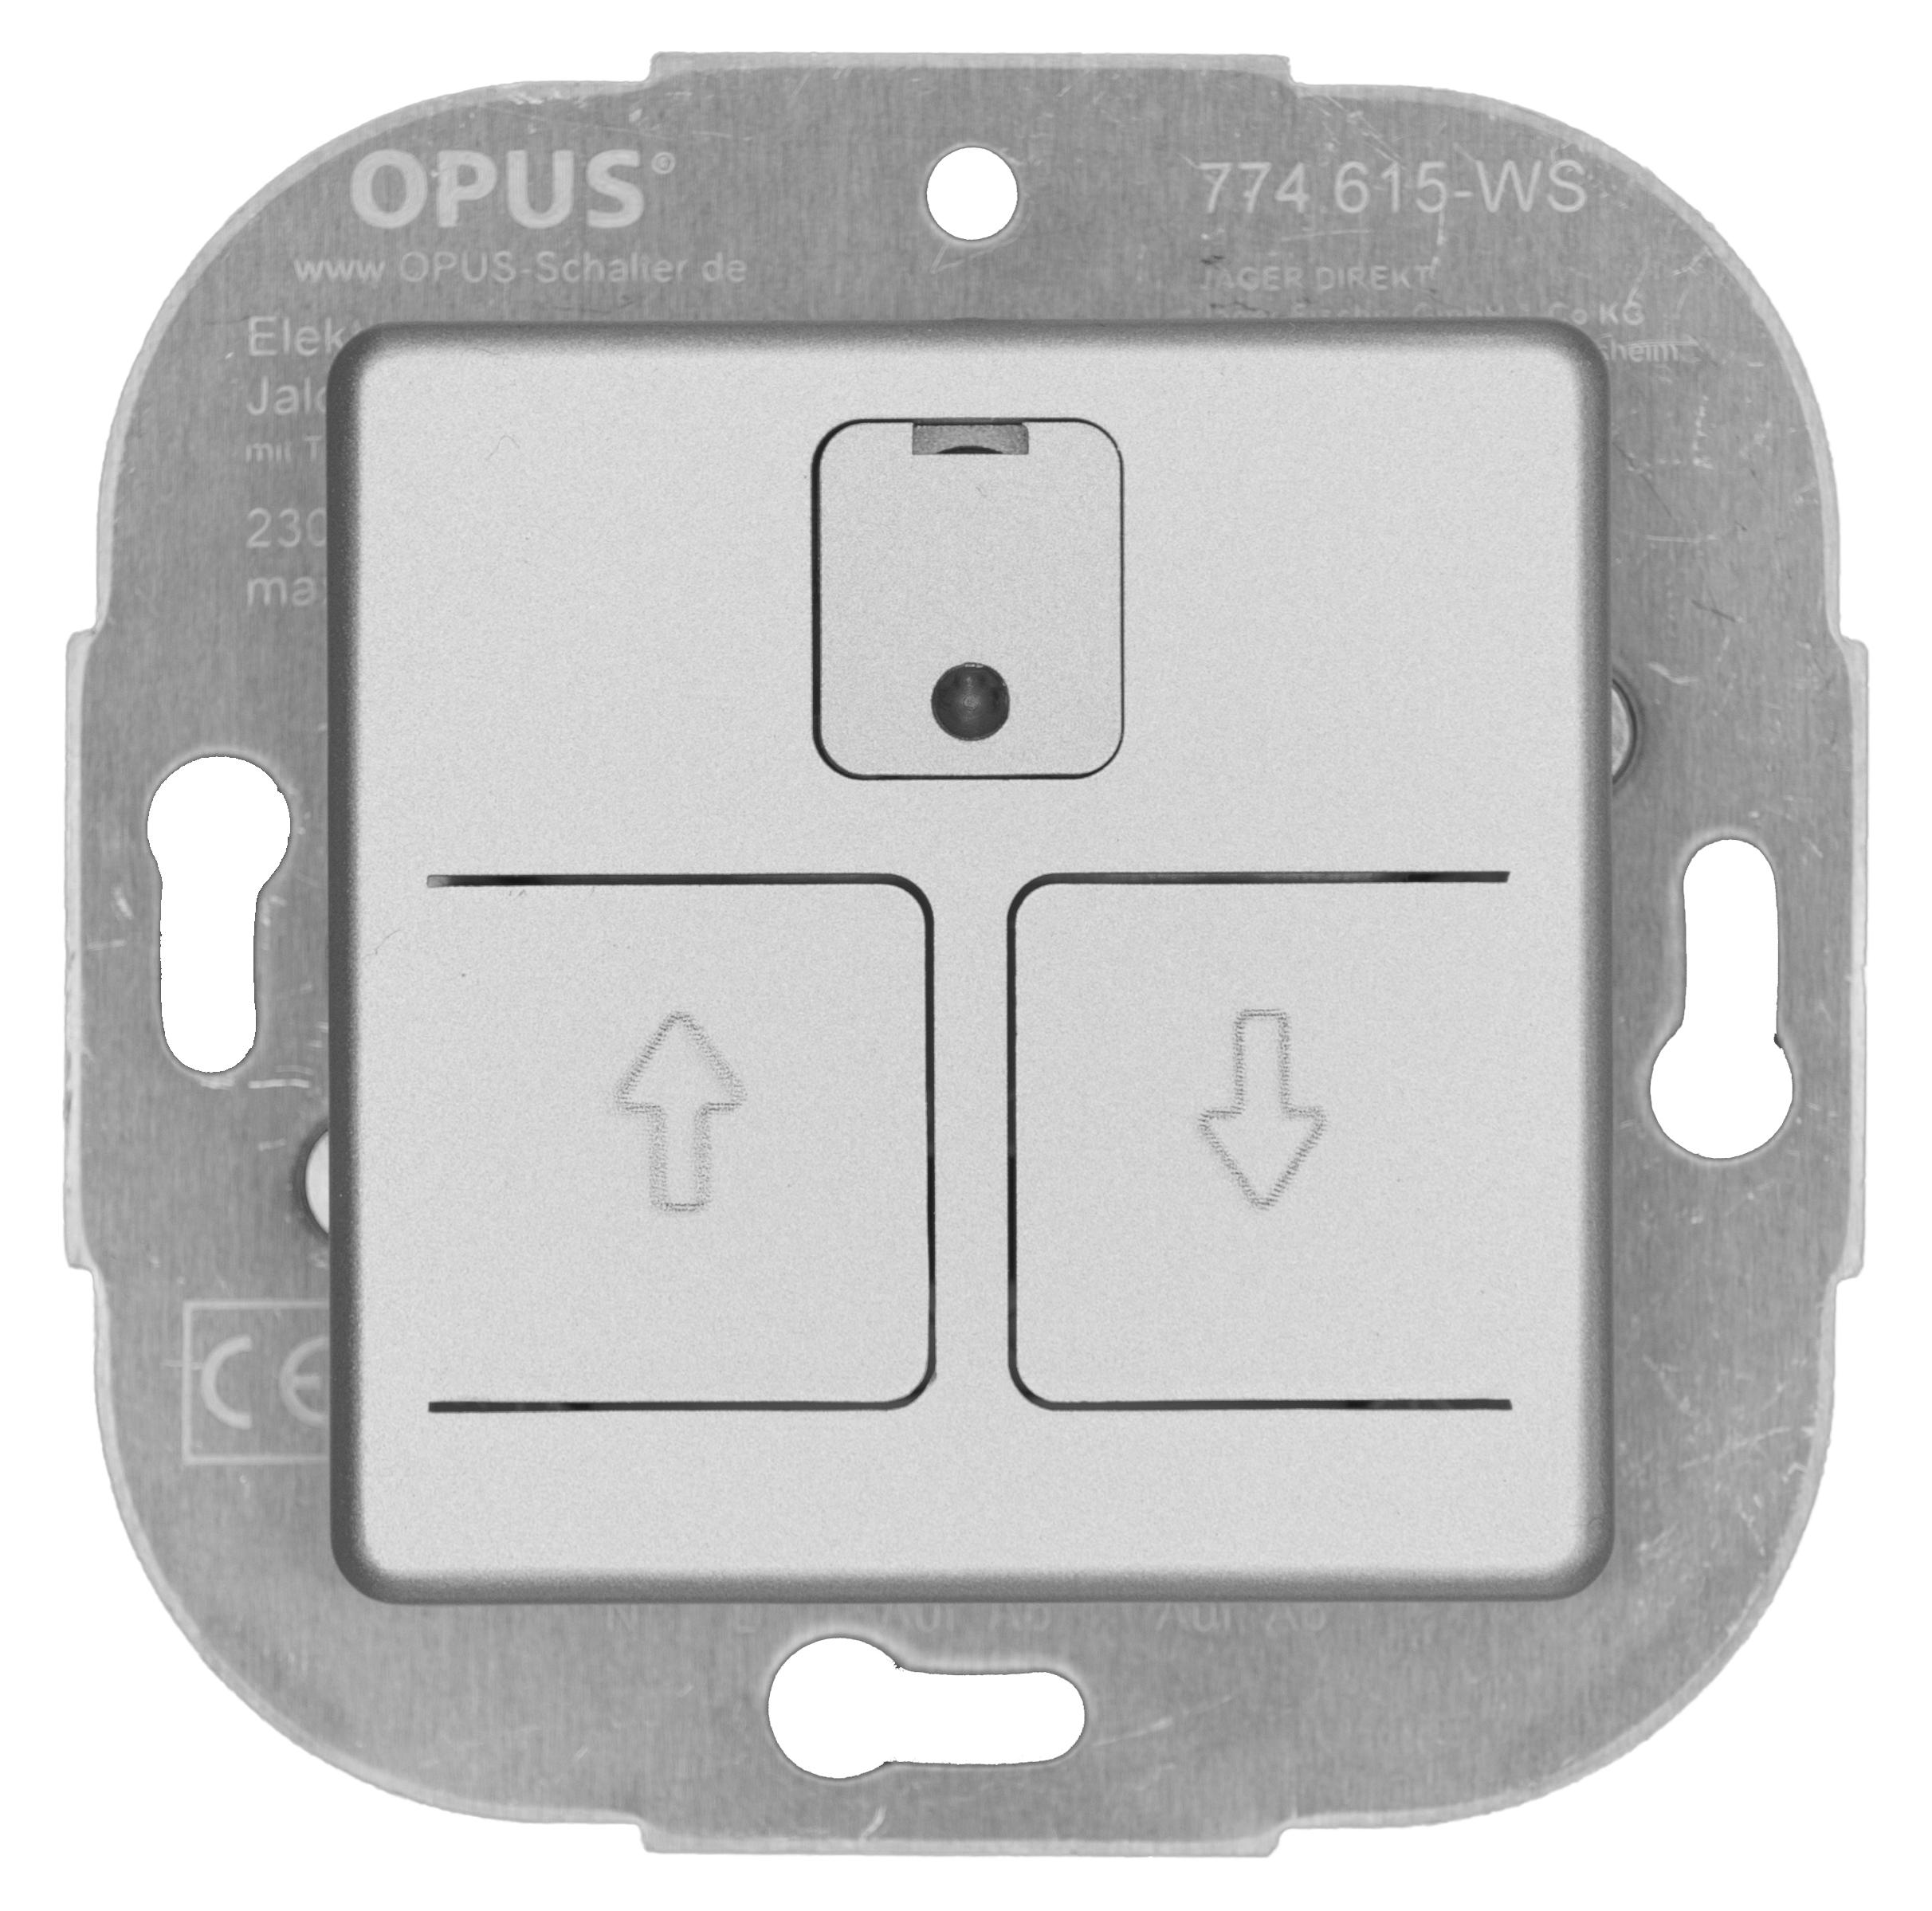 Elektronischer Rollladenschalter mit Abdeckung 24 h-Automatik alu-silber-seidenglanz OPUS 55